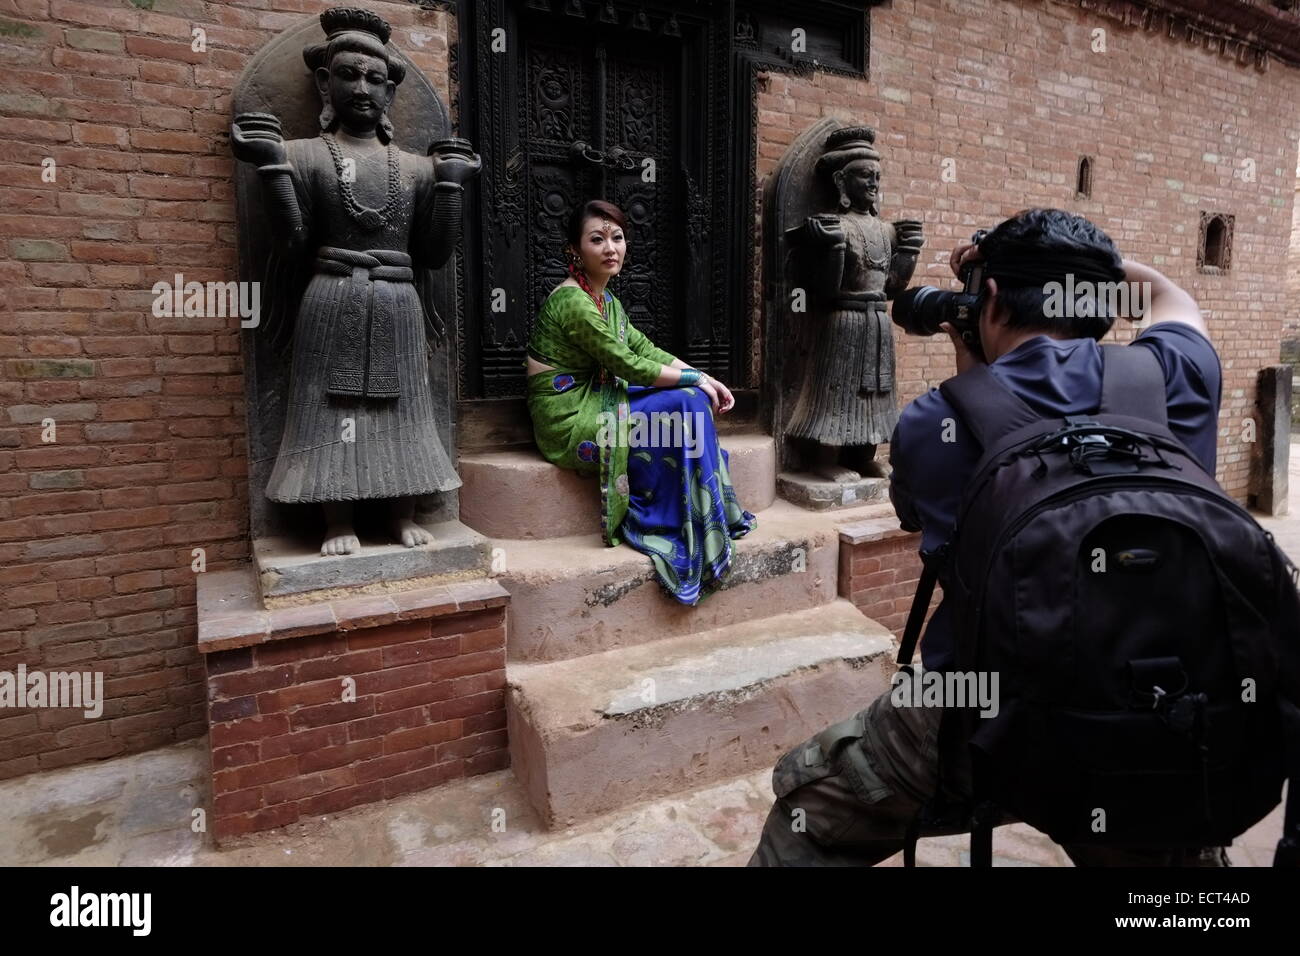 Chinesische Touristen in die Kamera posieren inmitten gemeißelte Figuren verzieren einer der Eingänge zum königlichen Palast Komplex in Layaku Durbar Square liegt ein Konglomerat von Pagode und Shikhara - Stil Tempel, meist auf die hinduistischen Götter und Göttinnen in der Stadt Bhaktapur auch als Khwopa in Nepal bekannt Stockfoto